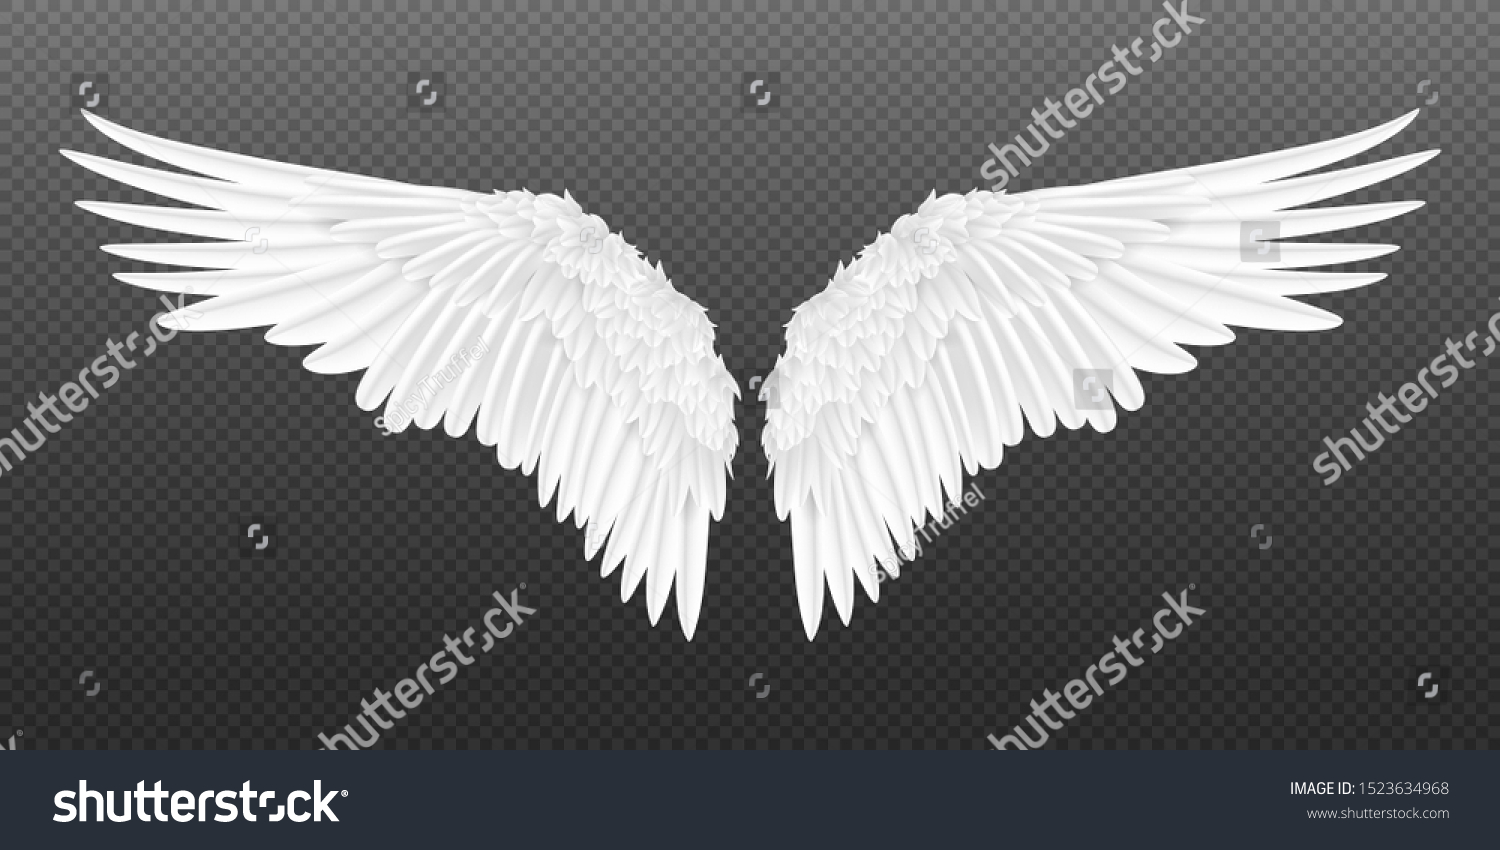 リアルな羽 透明な背景に白いエンジェルスタイルの翼と3d羽 ベクターイラスト鳥の翼デザイン のベクター画像素材 ロイヤリティフリー